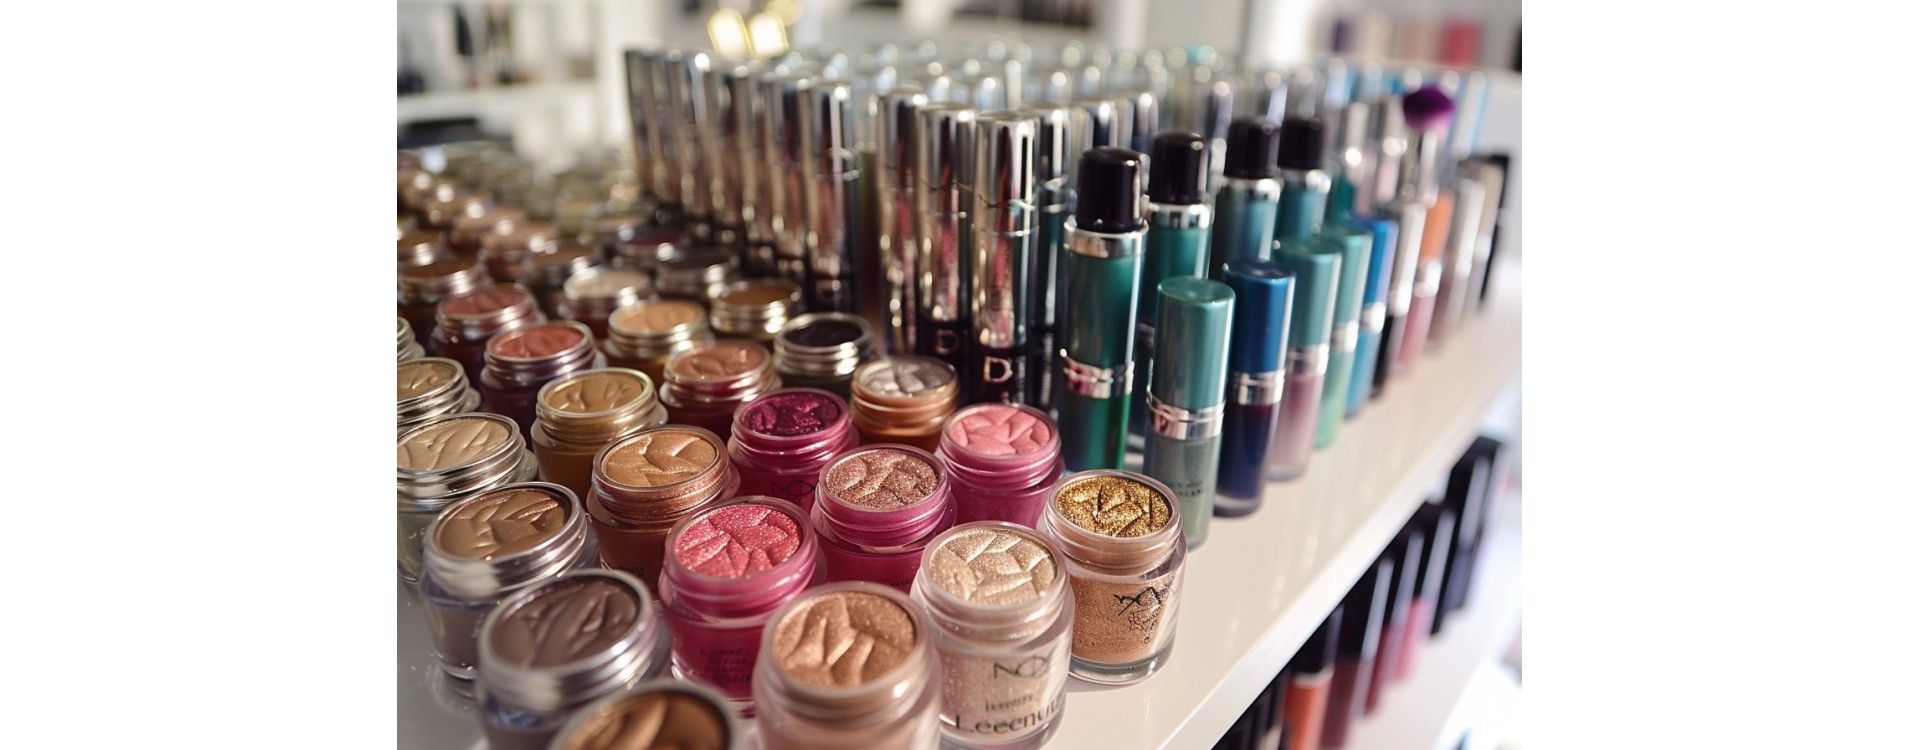 Trouvez vos produits de maquillage de marque à petit prix chez Jesenslebonheur.fr